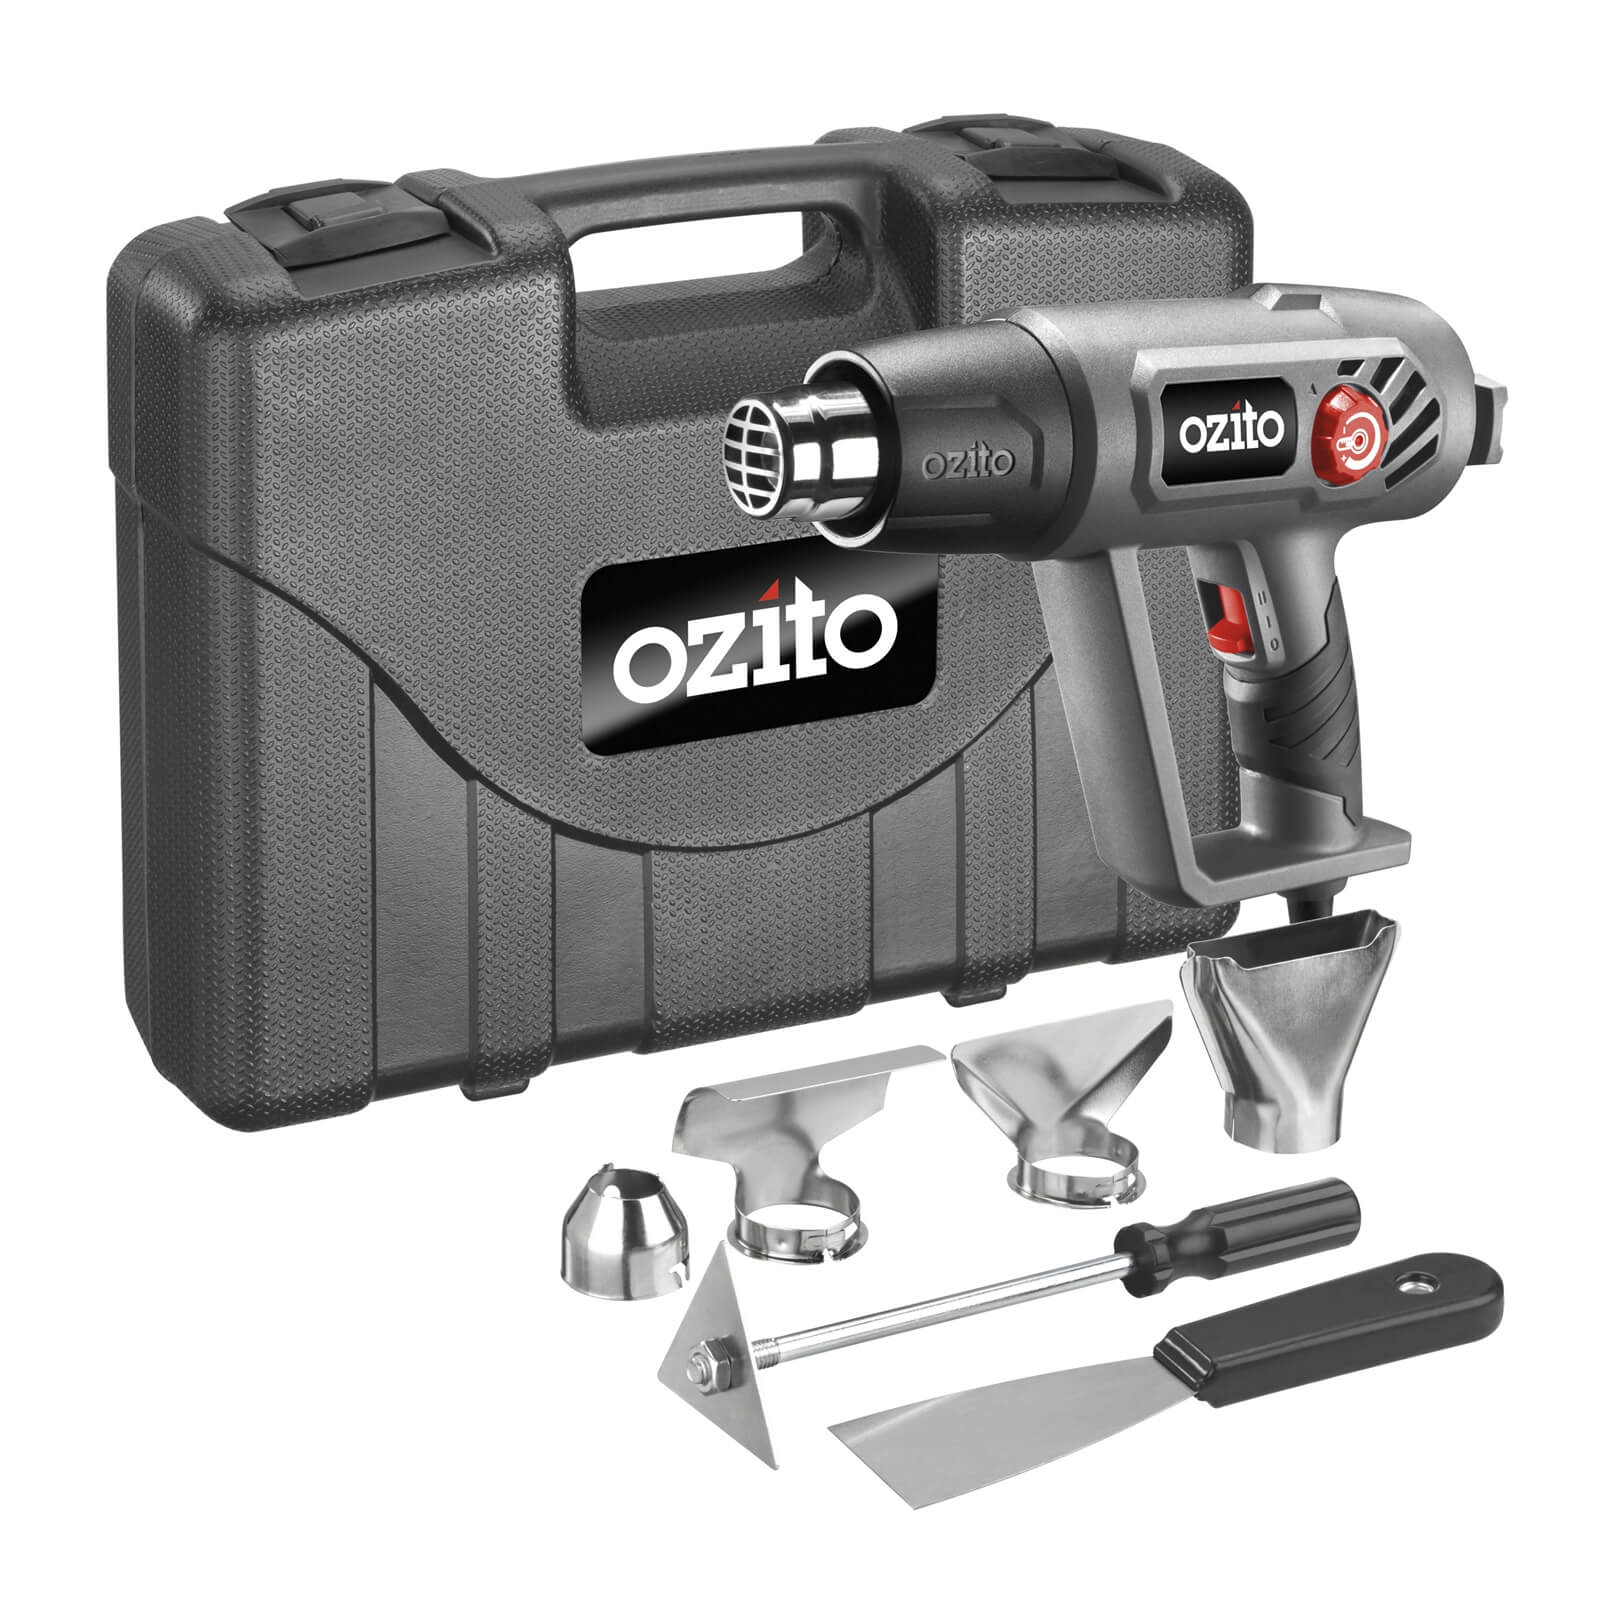 Ozito by Einhell 2000W 2 Speed Heat Gun Kit